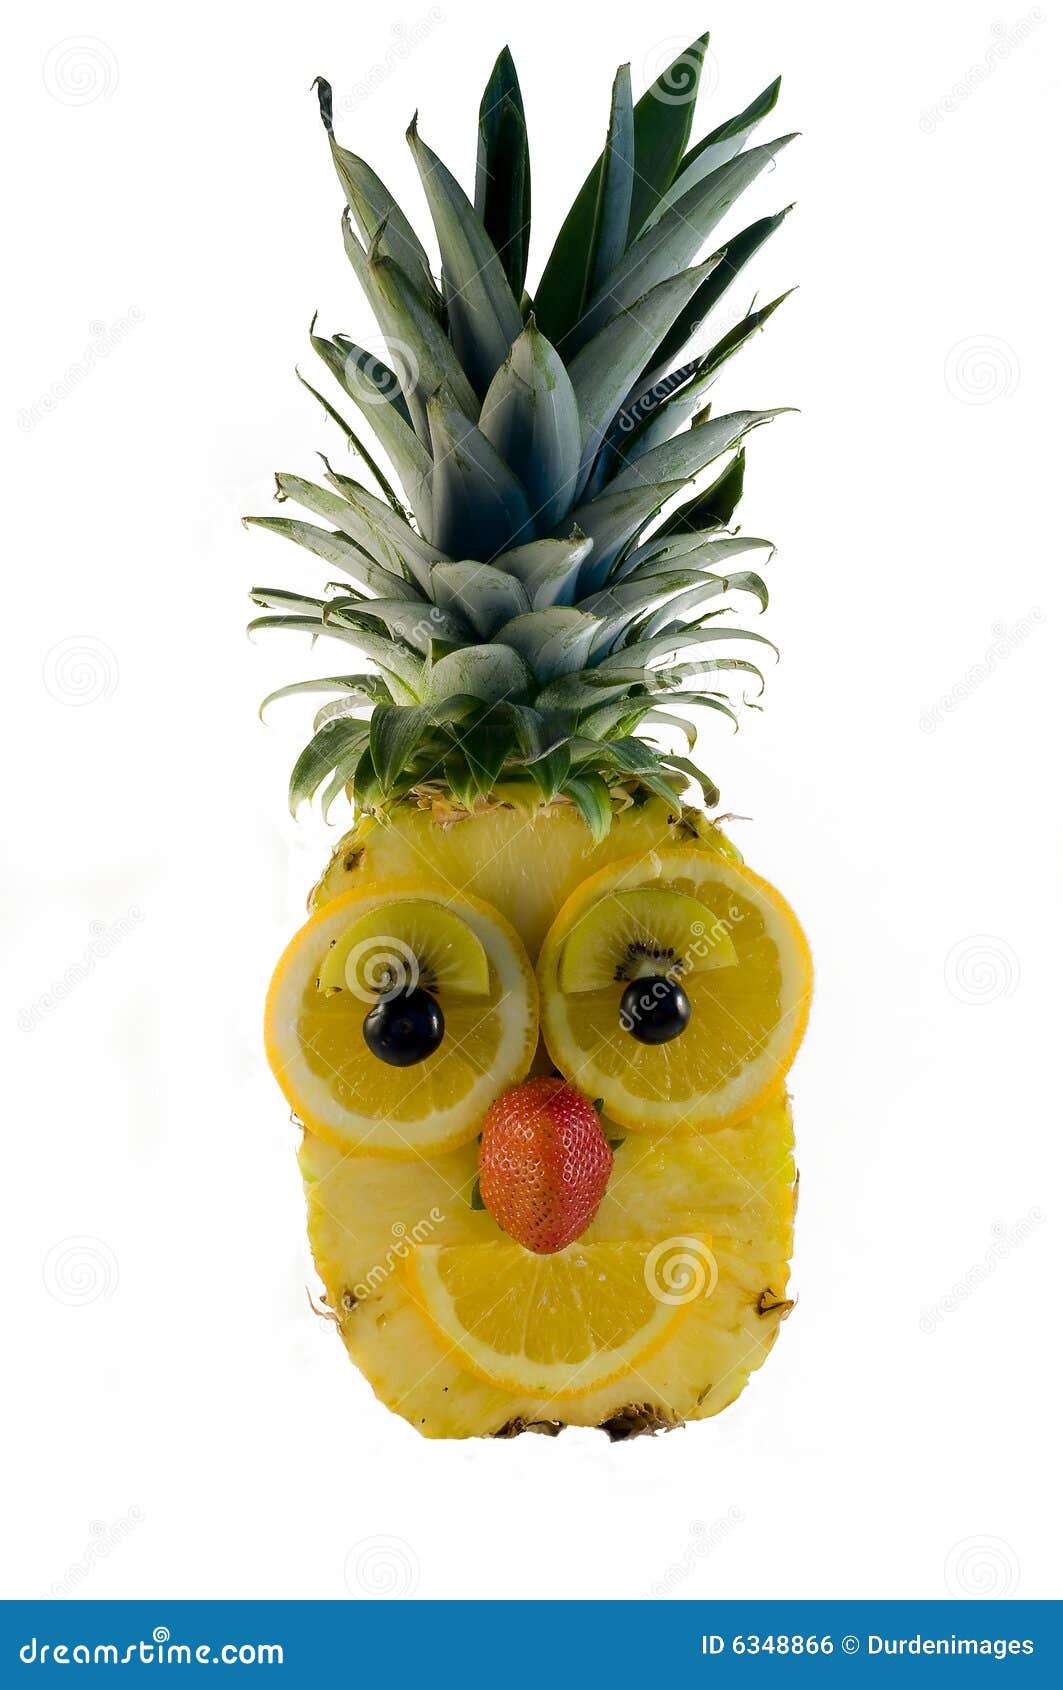 Het gezicht van het fruit. Een gelukkig gezicht met een haarknotje dat uit een ananas met sinaasappelen, bosbessen, kiwi en aardbei wordt geconstrueerd om de eigenschappen te vormen en dat op een witte achtergrond wordt geïsoleerd.